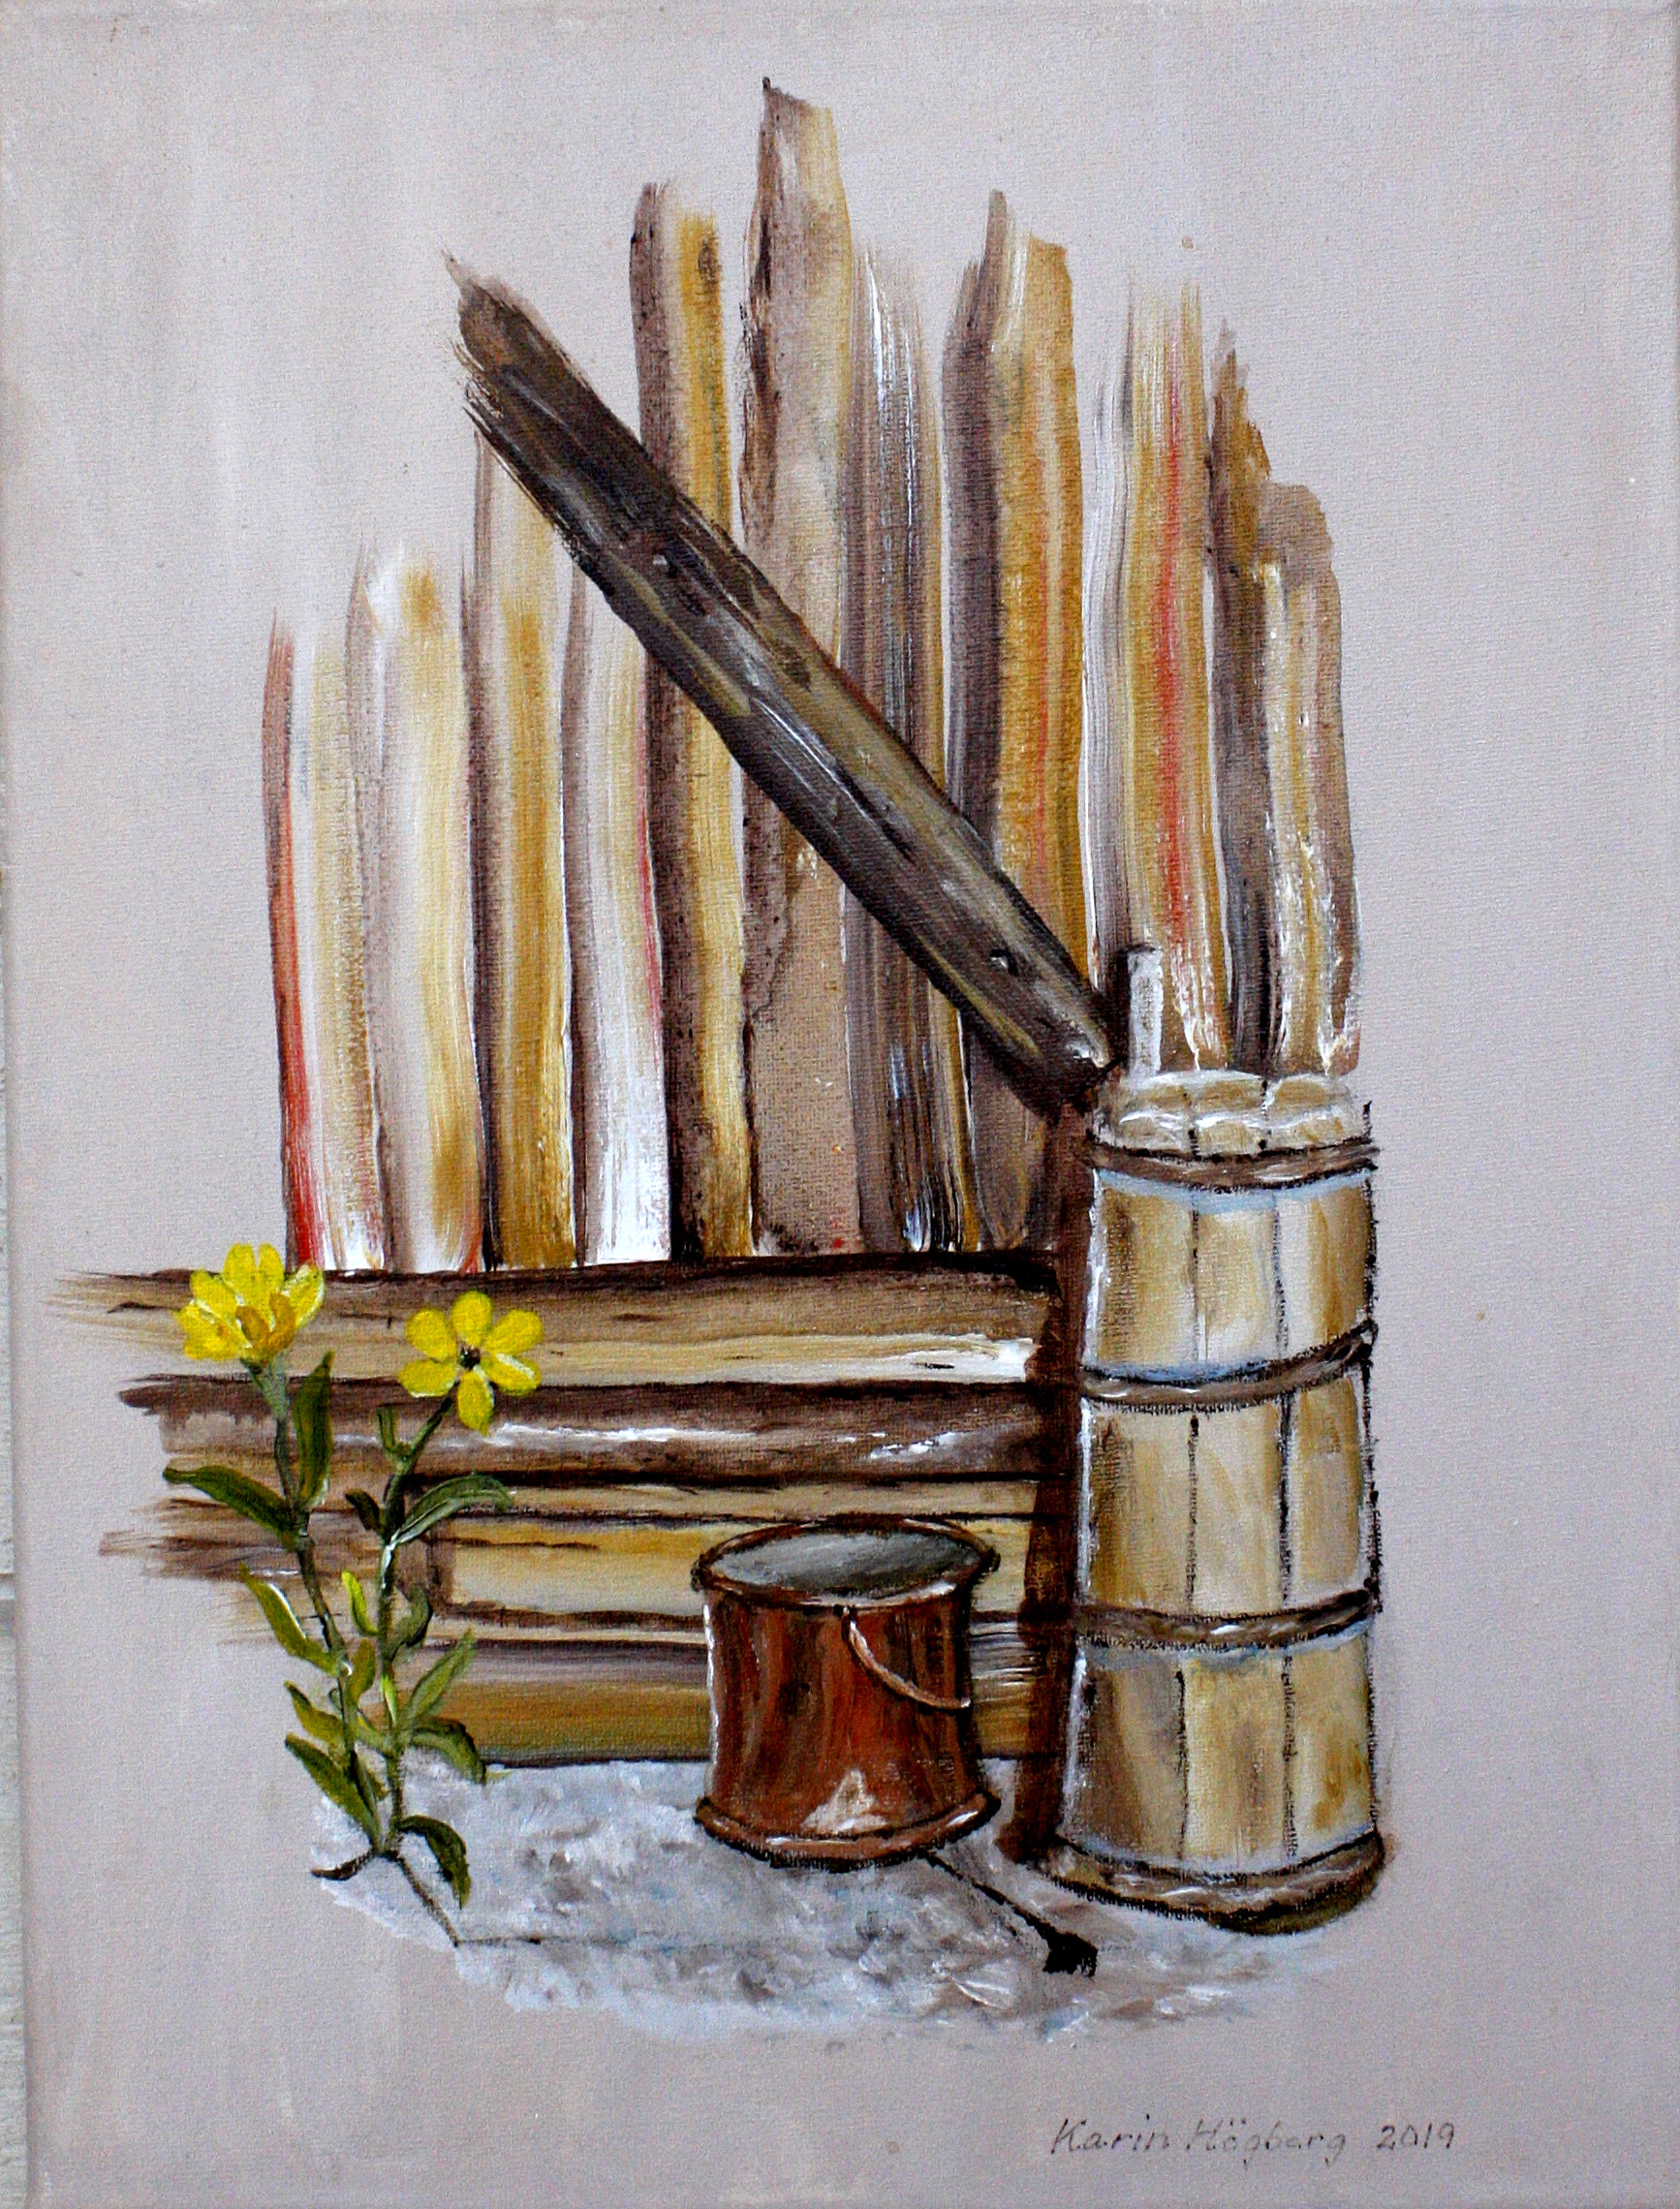 Tavla av Karin Högberg. Motiv: Hörnet på ett trästaket, kopparhink, gula blommor.